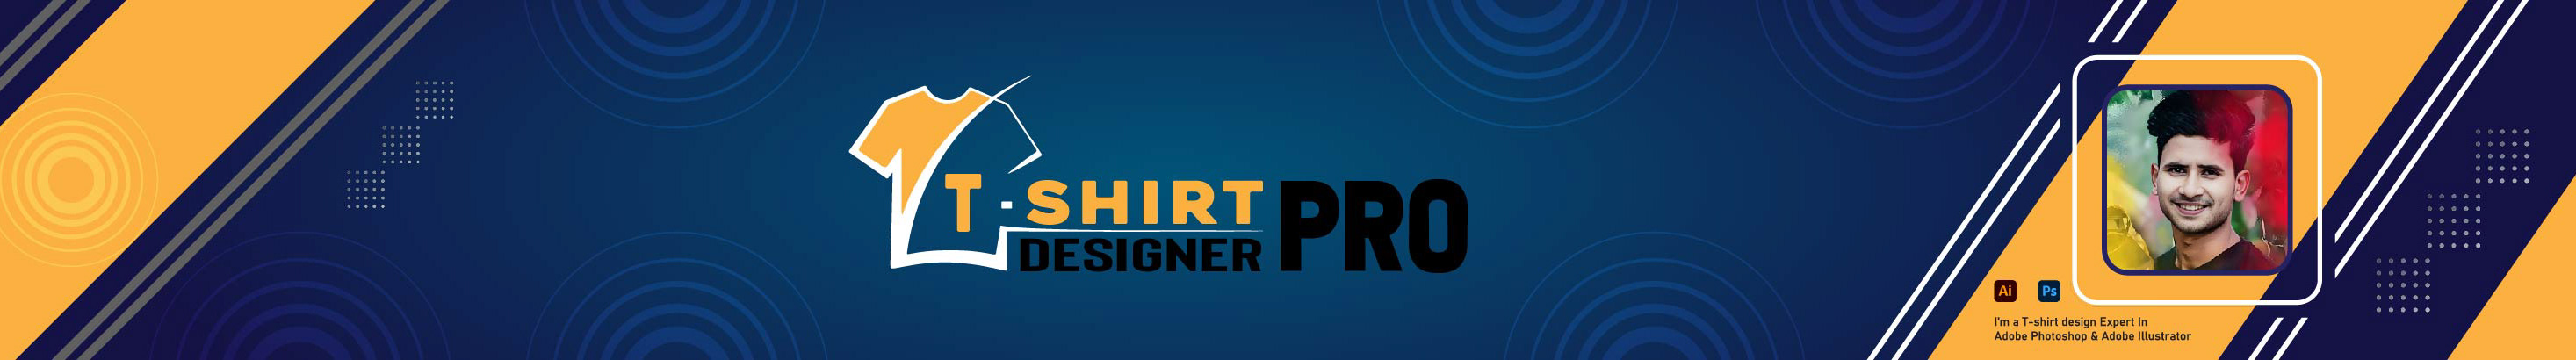 Banner profilu uživatele T-Shirt Designer Pro